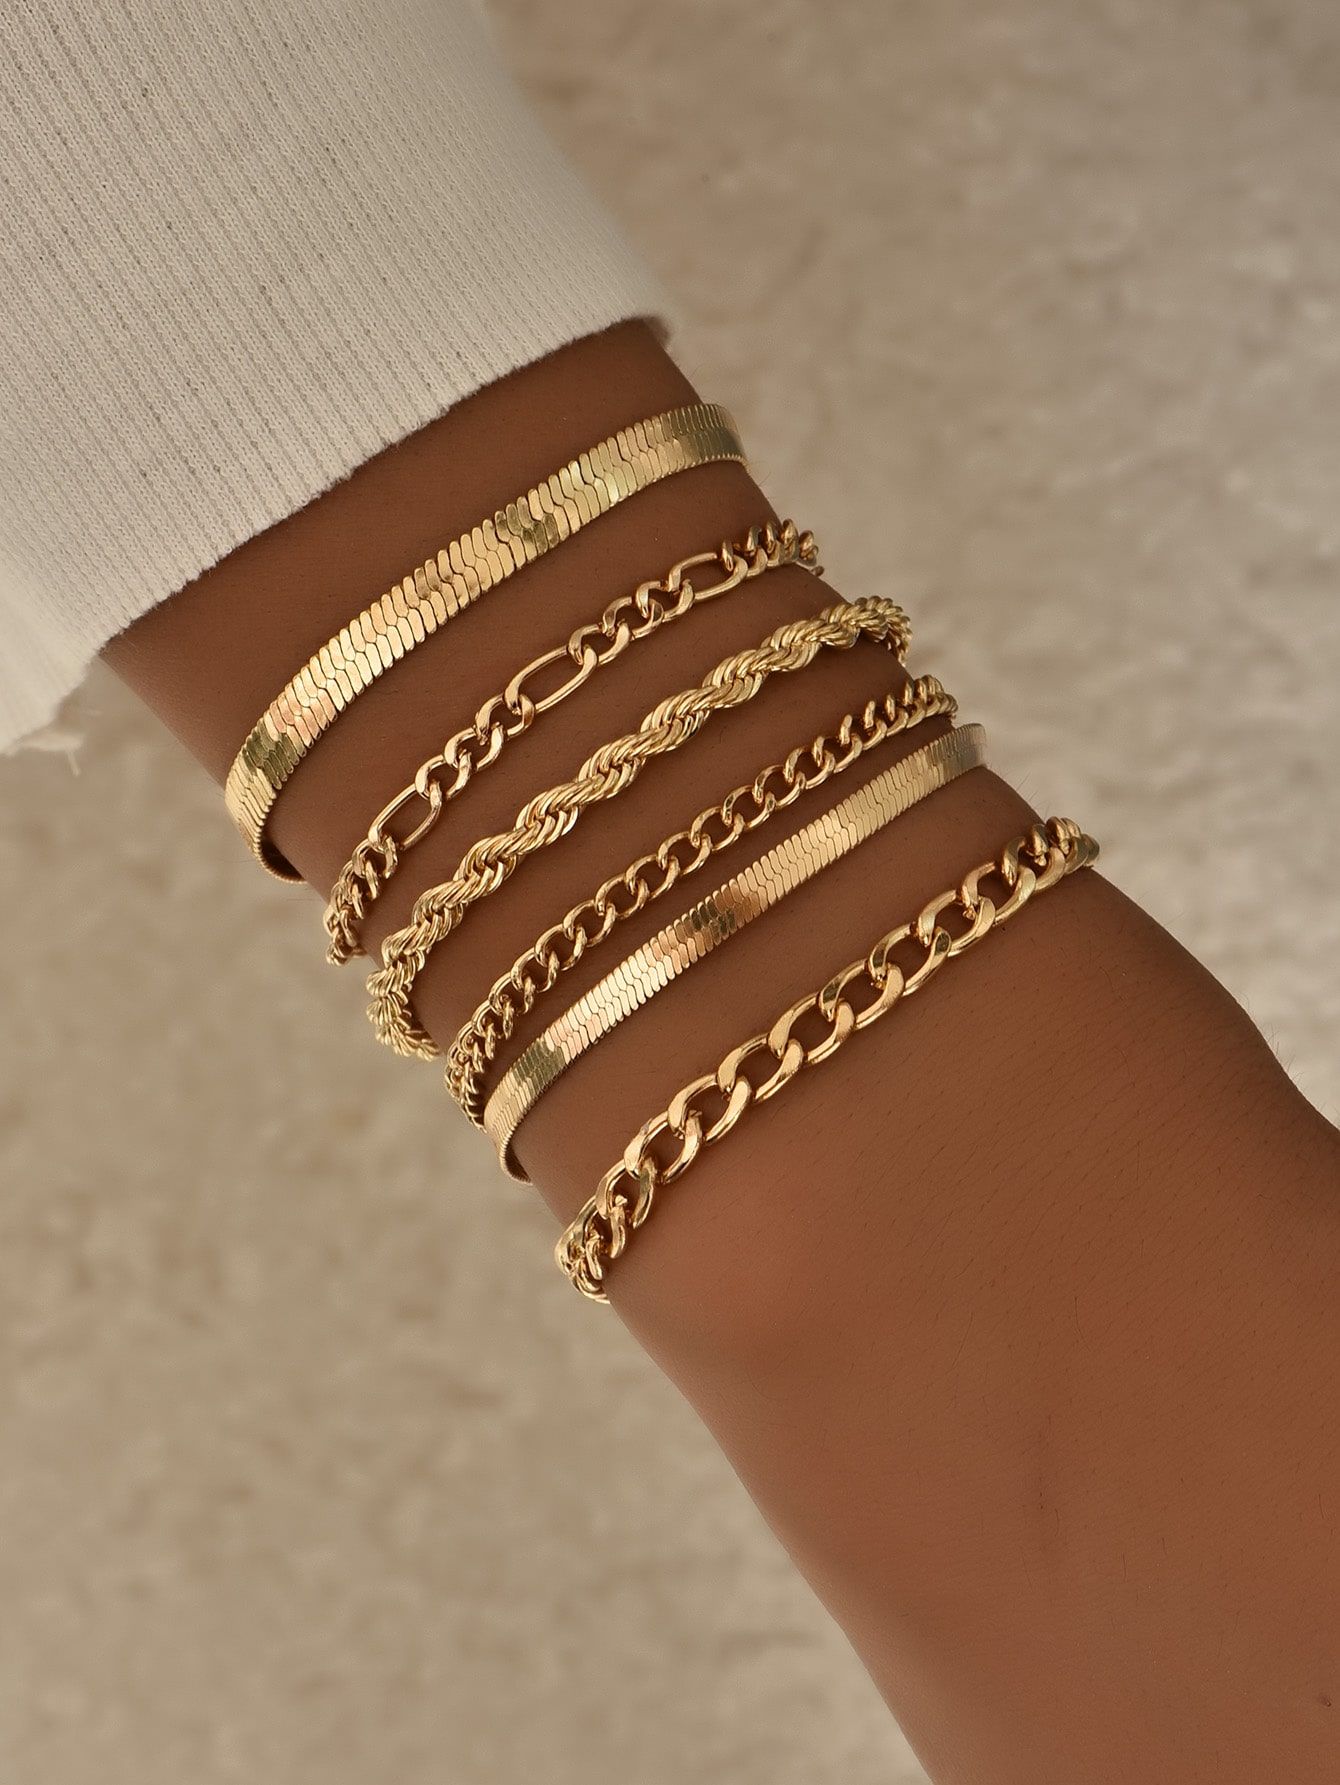 Women bracelets gives you a stylish look